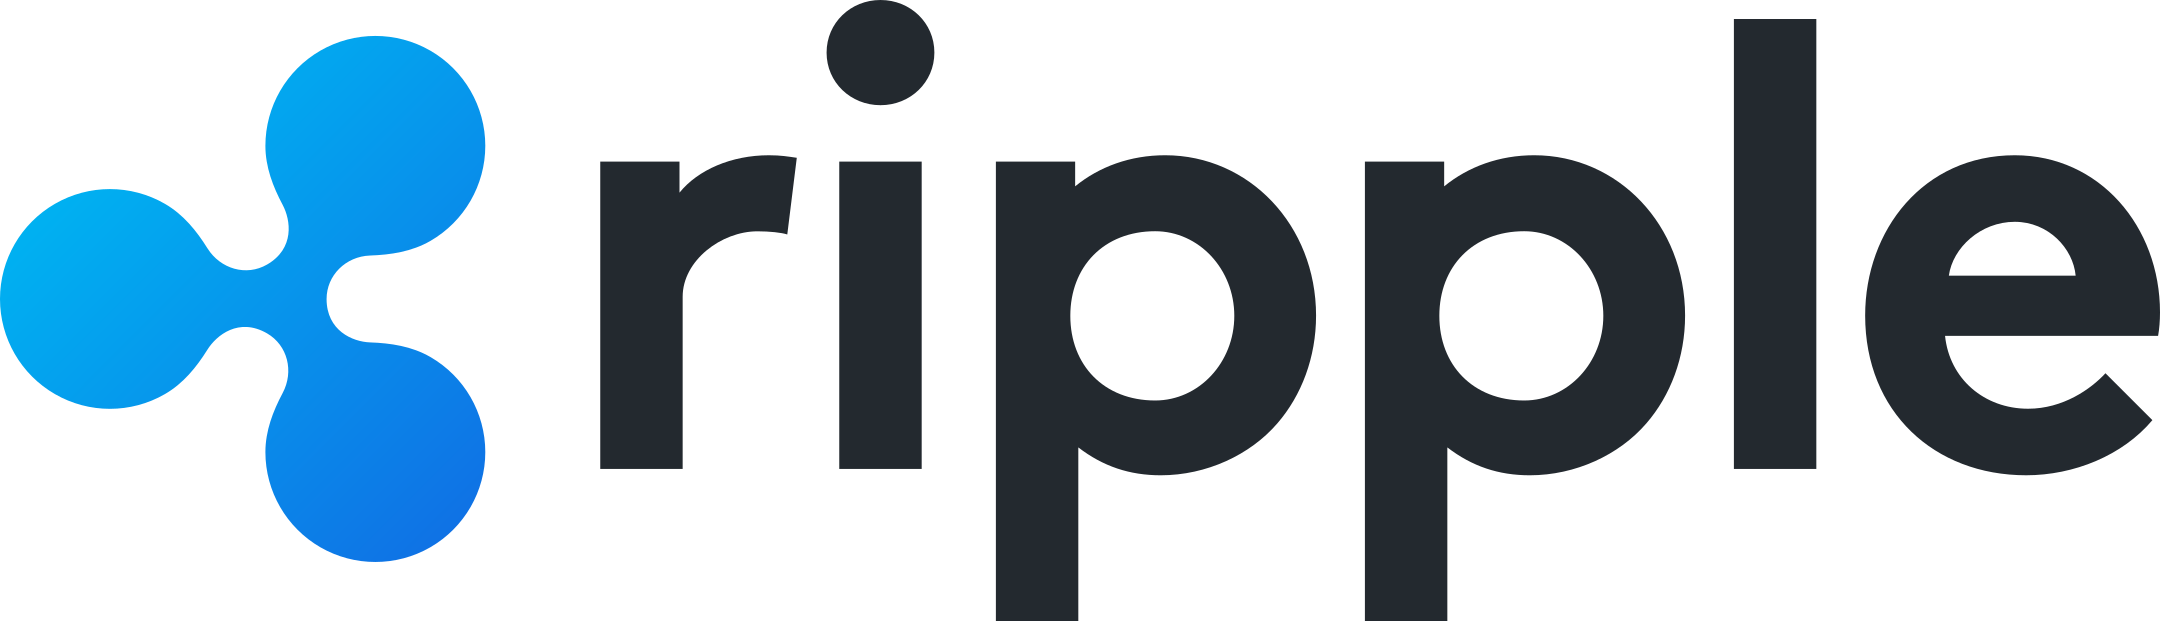 ripple logo 1 - Ripple Logo